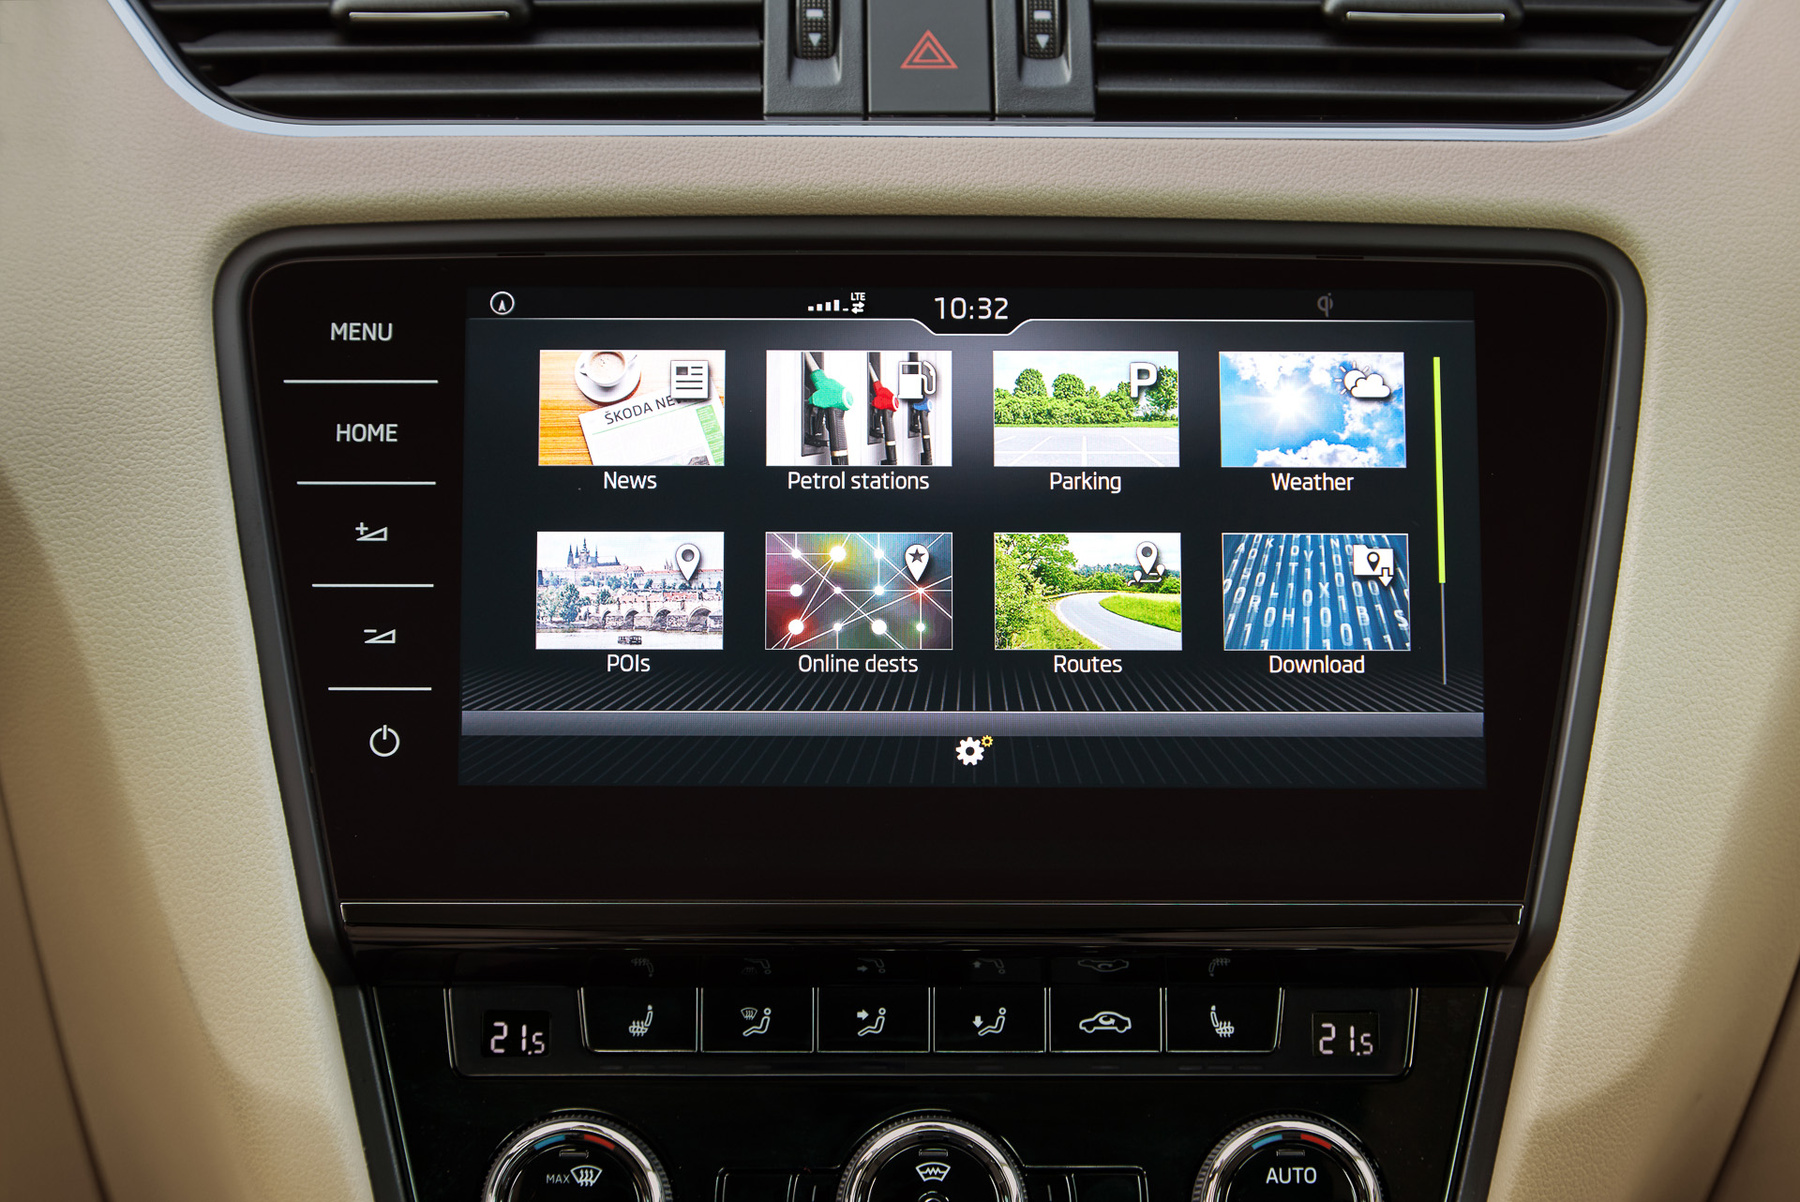 Az autóról is kaphatunk információkat, akár az okostelefonunkra telepített applikáción keresztül is